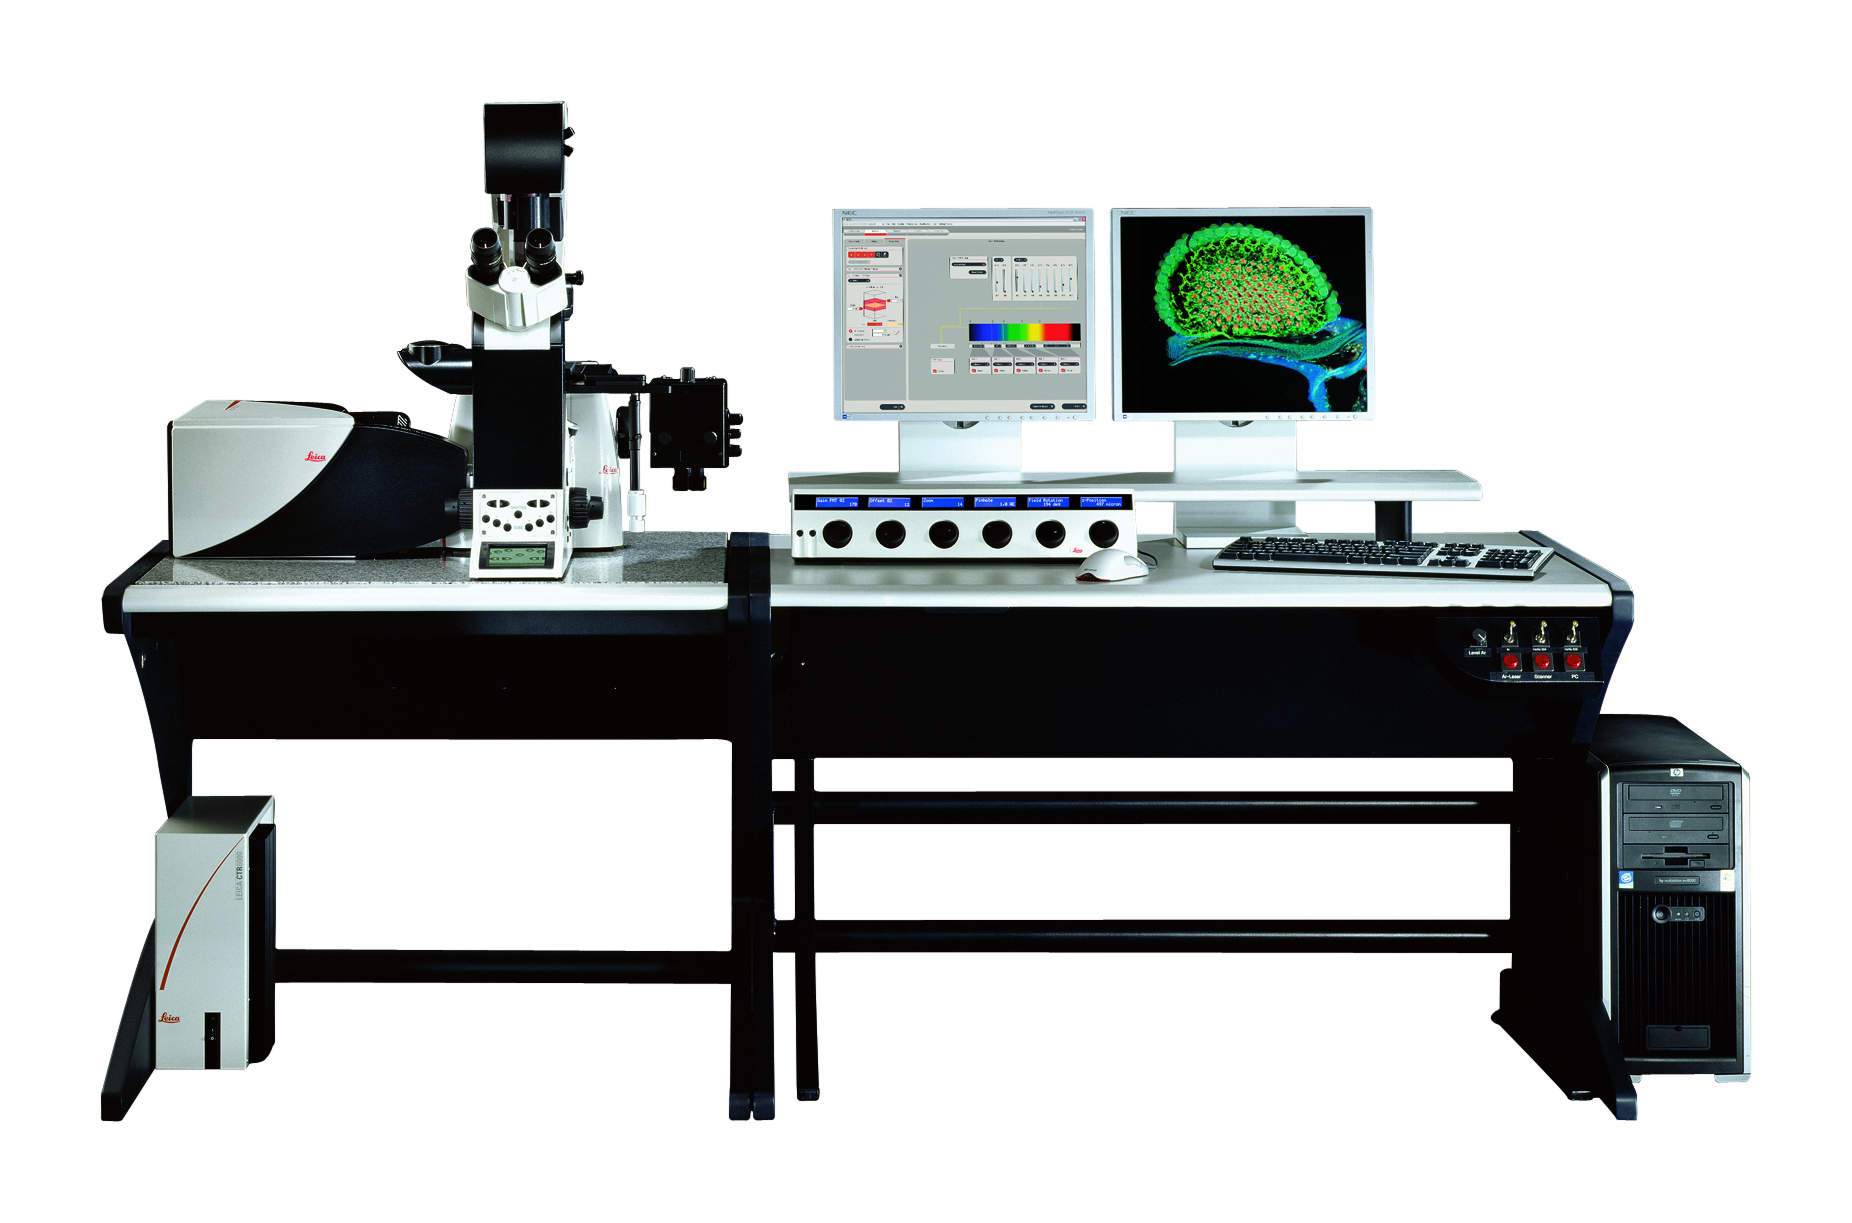 El microscopio confocal de banda ancha Leica TCS SP5 es altamente compatible con diferentes sistemas de hardware, por lo que puede utilizarse con una amplia variedad de aplicaciones de obtención de imágenes.  